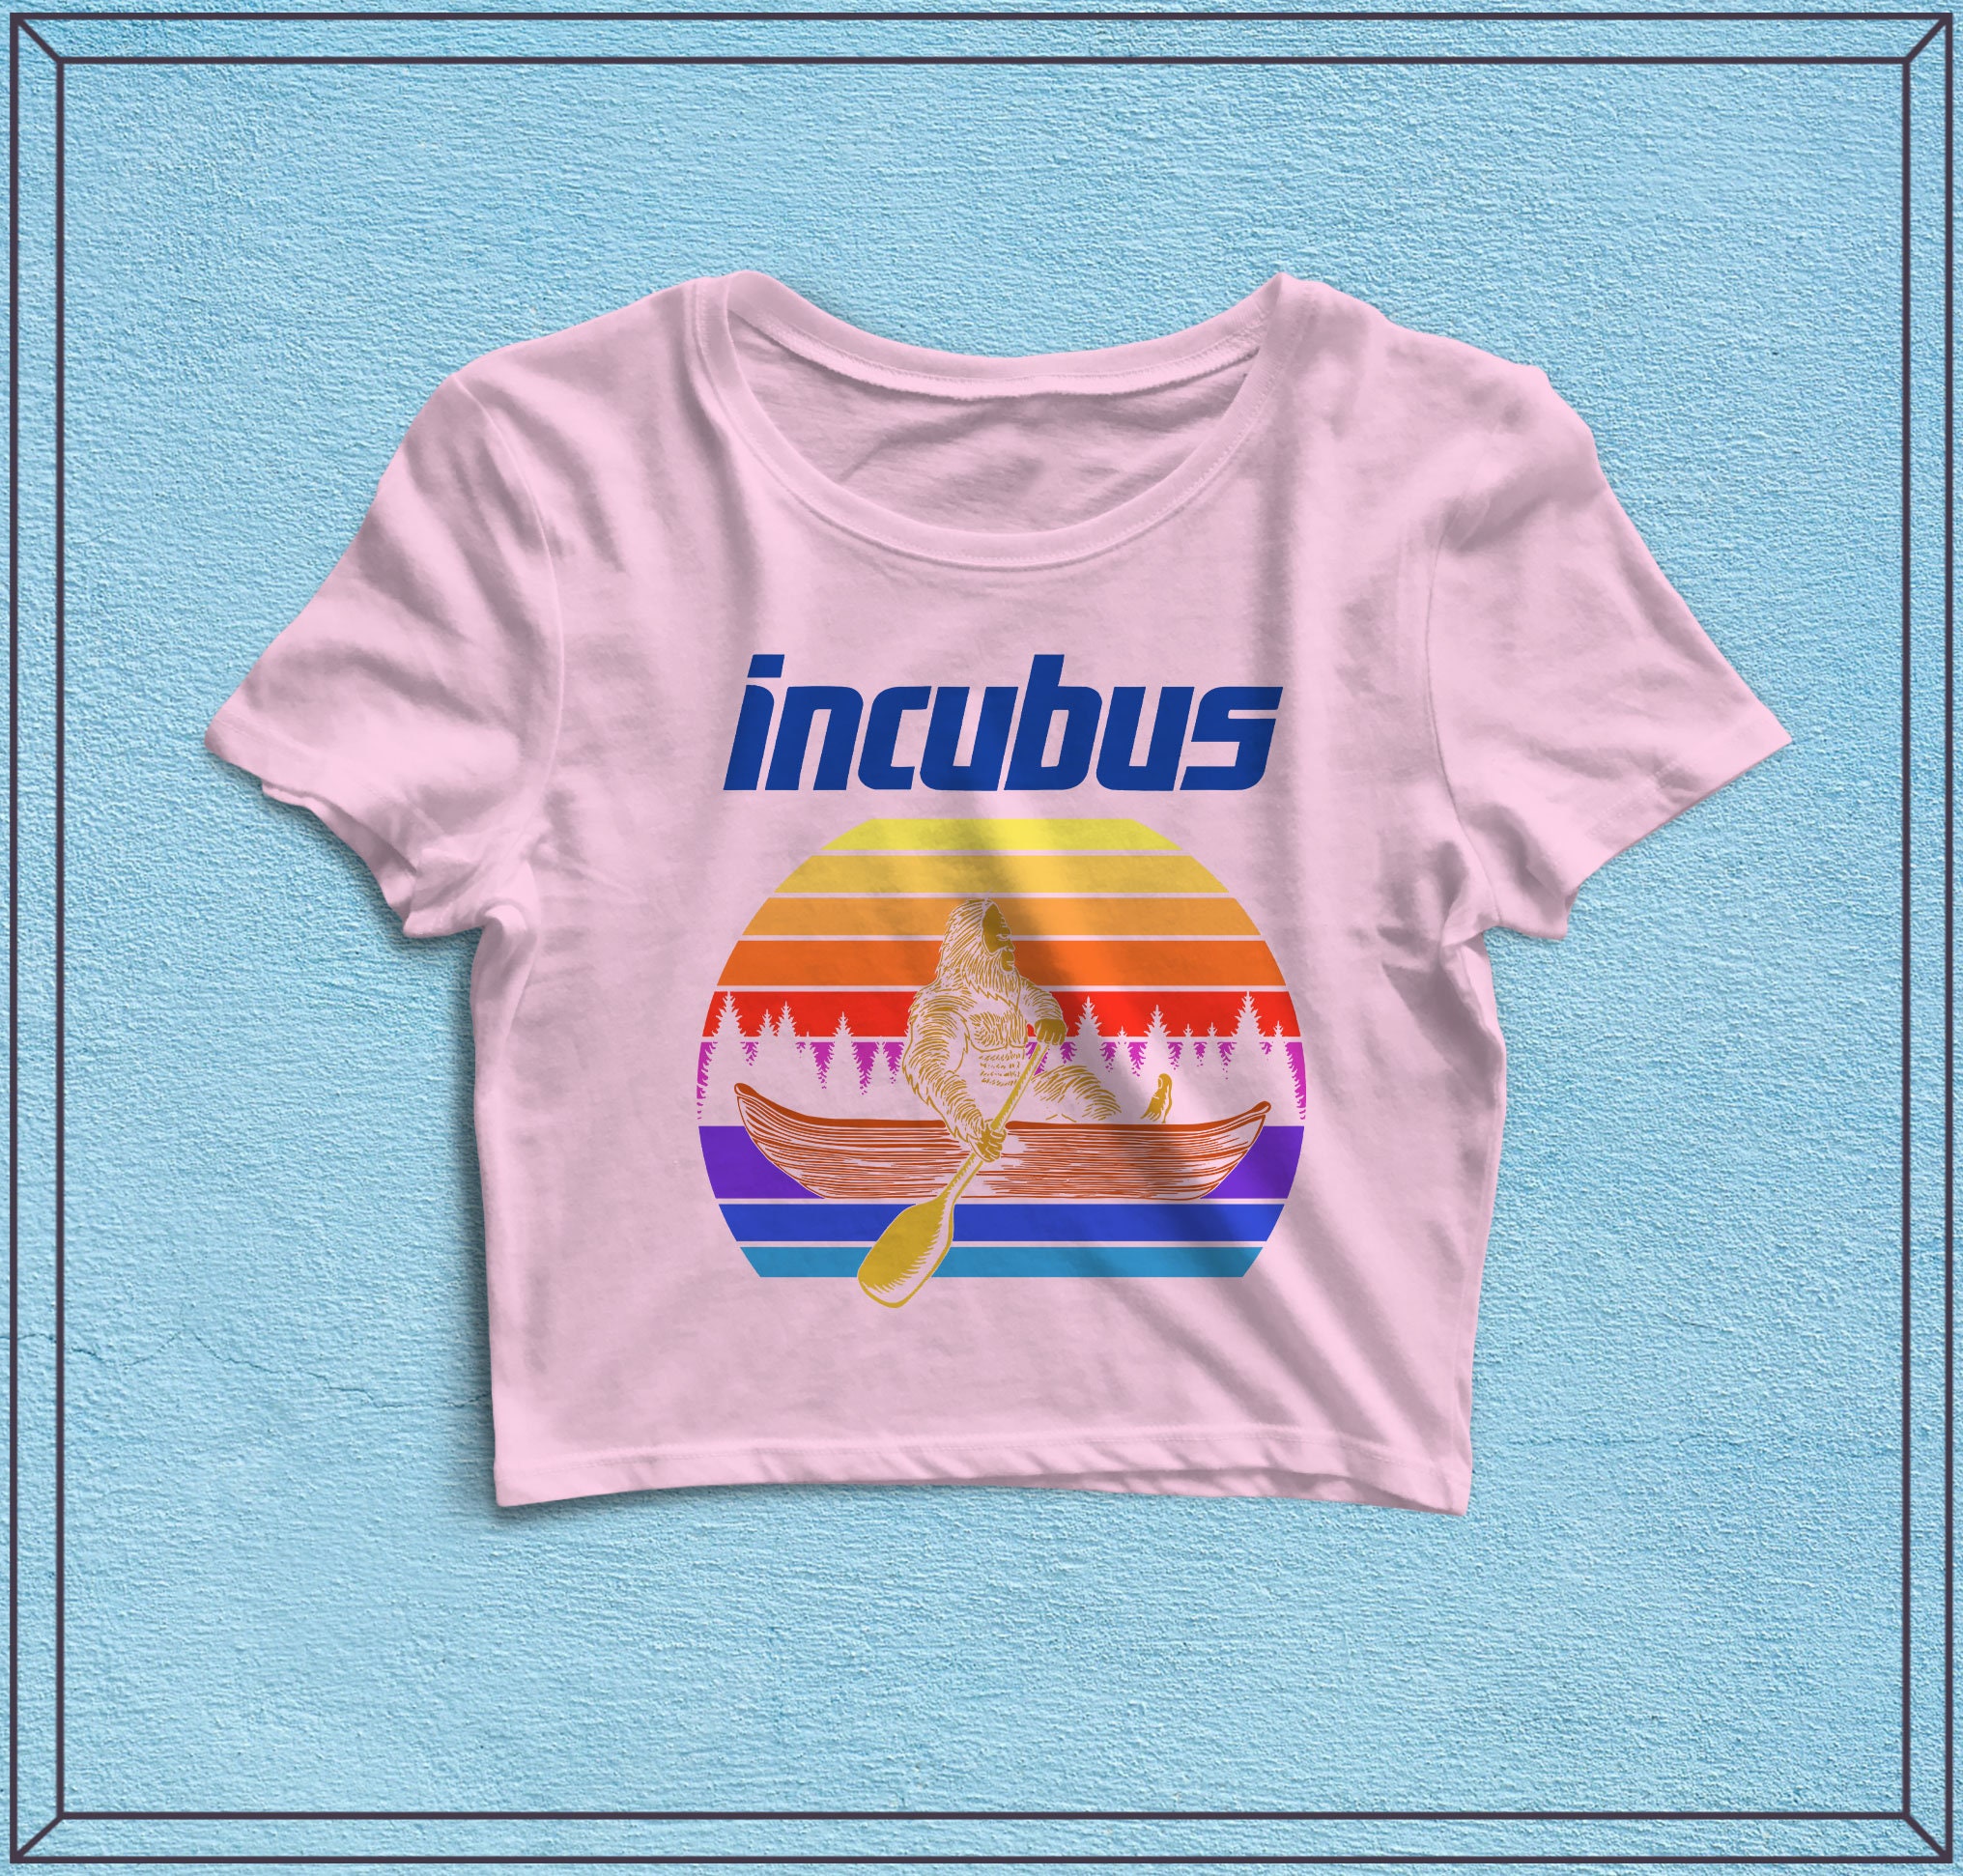 Incubus Tour Crop Top - Music Shirt, Women Shirts